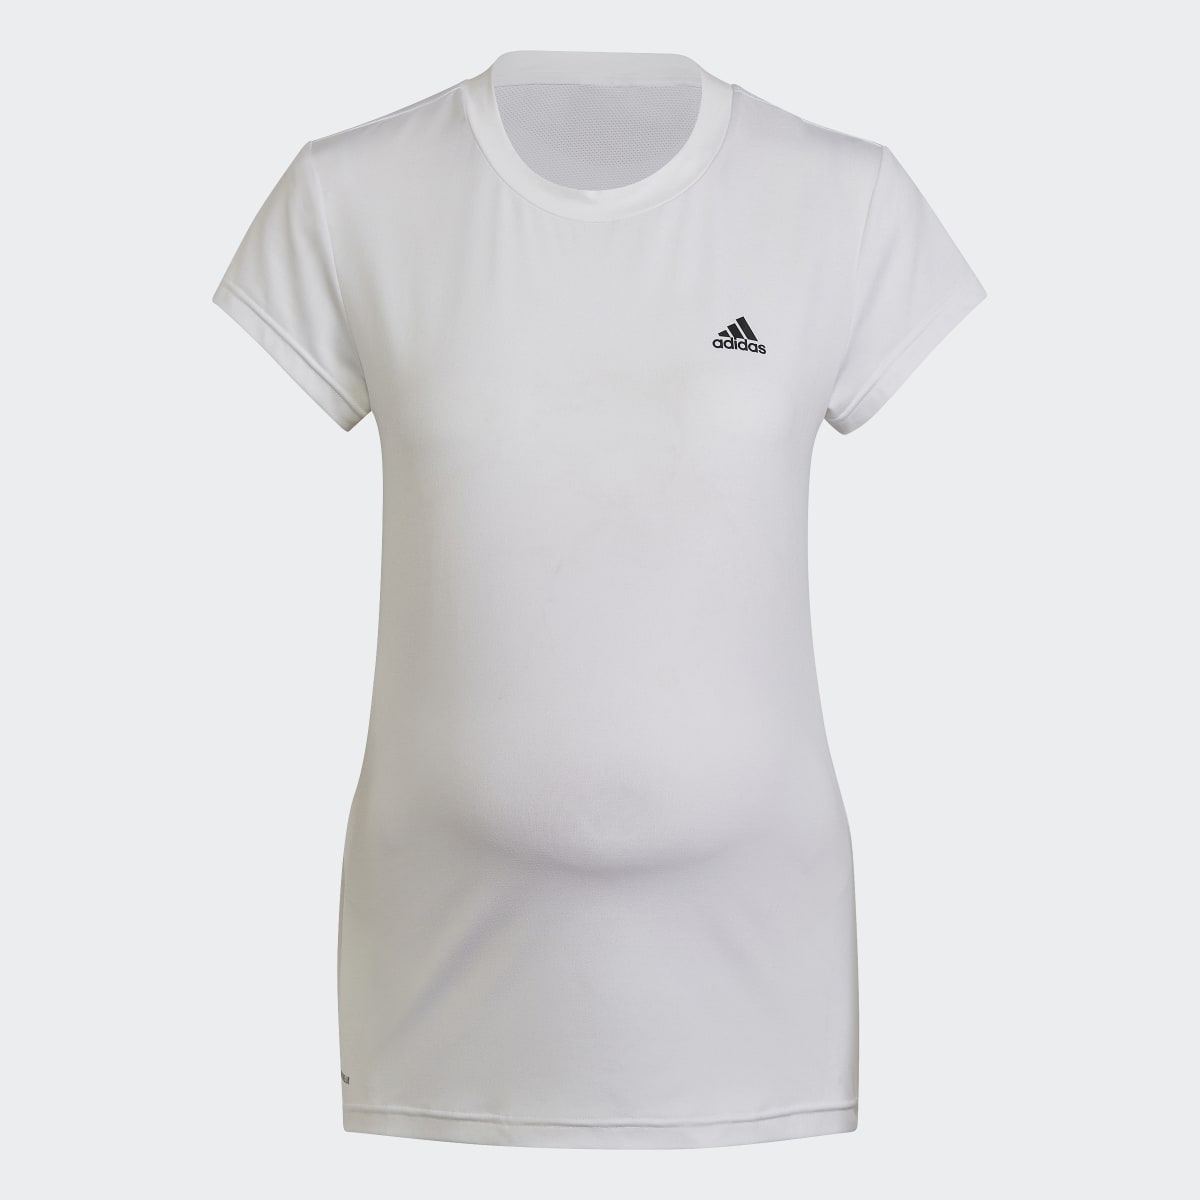 Adidas T-shirt Designed to Move Colorblock Sport (Maternità). 5